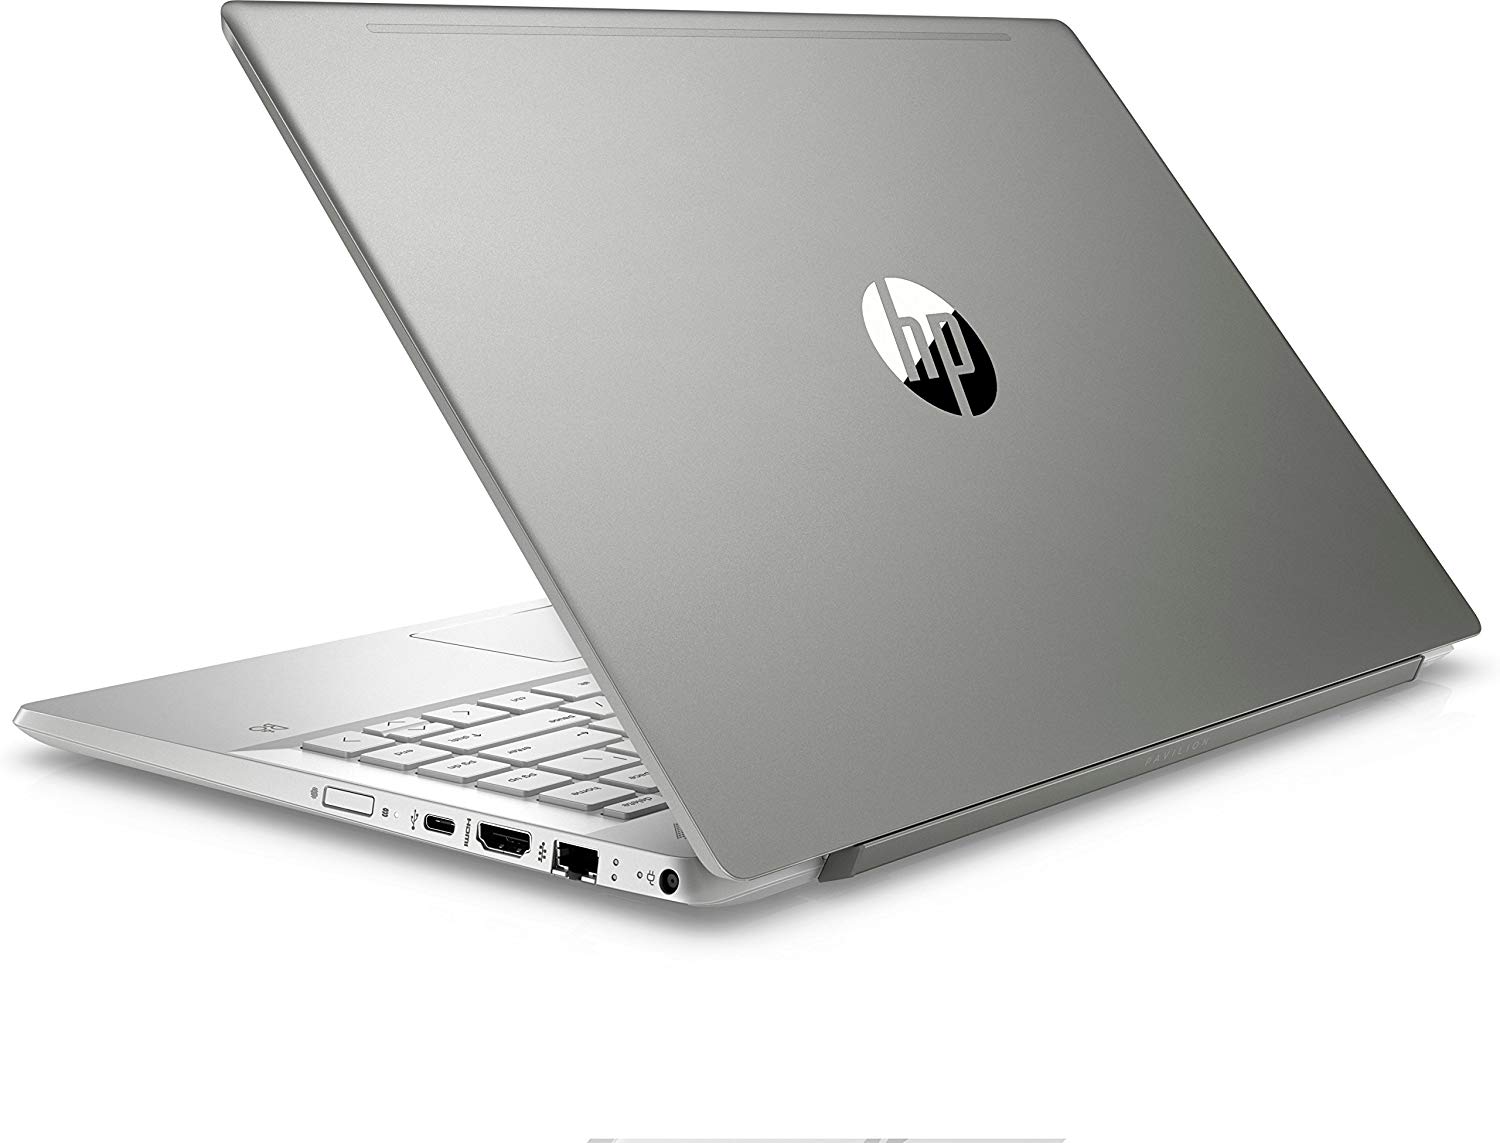 HP Pavilion 35.6 cm Laptop 14-dv2014TU - Silver